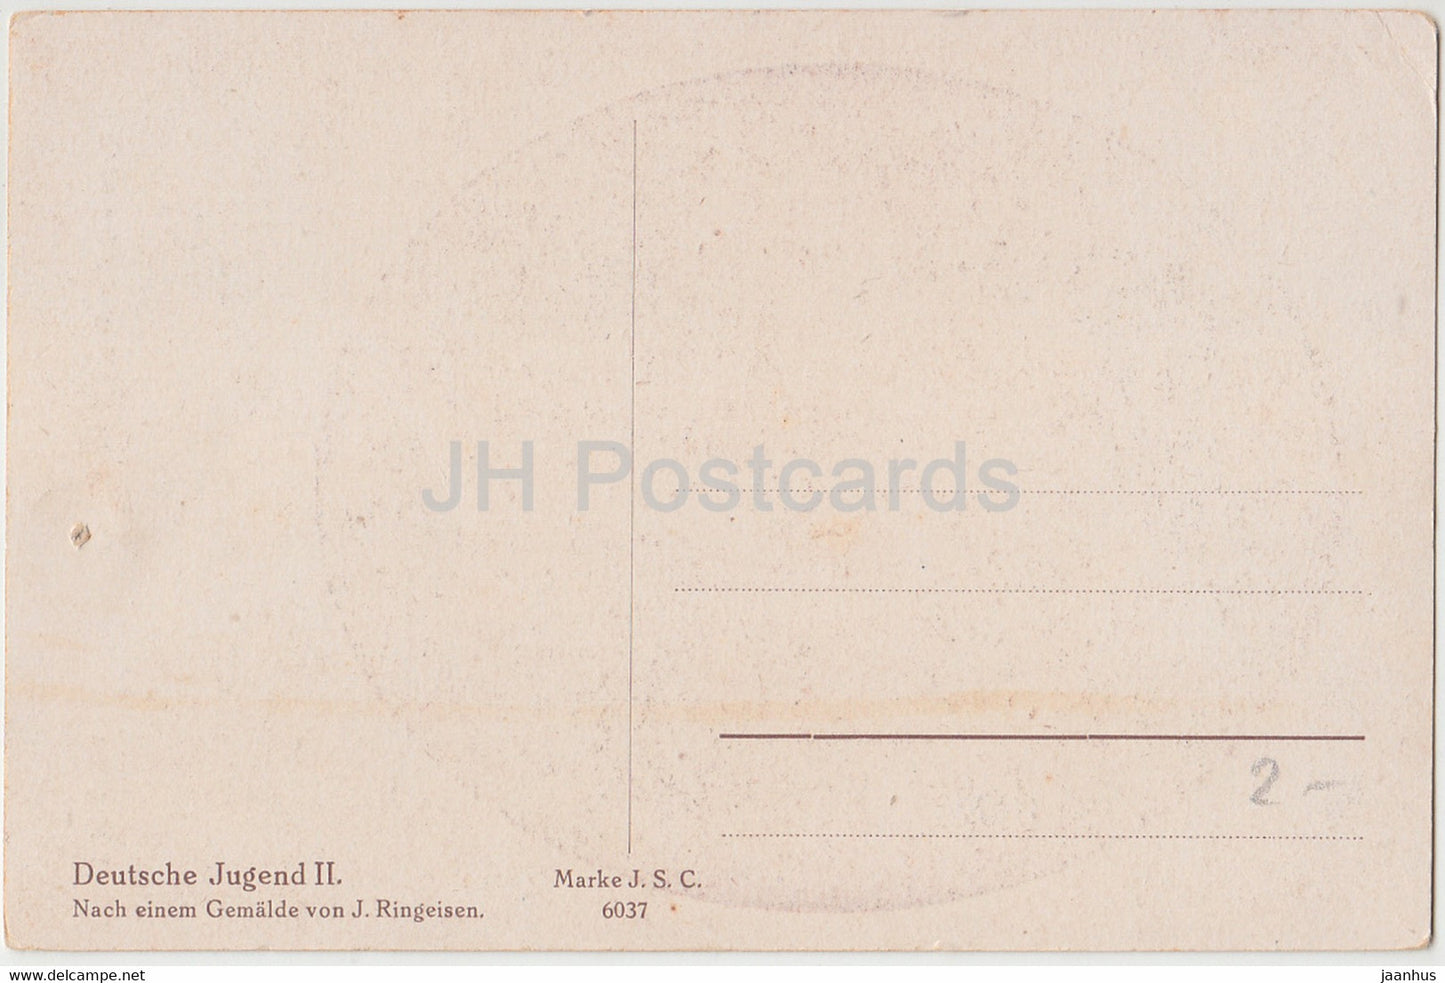 Gemälde von J. Ringeisen – Deutsche Jugend II – Mädchen – Marke JSC 6037 – Deutsche Kunst – alte Postkarte – Deutschland – unbenutzt